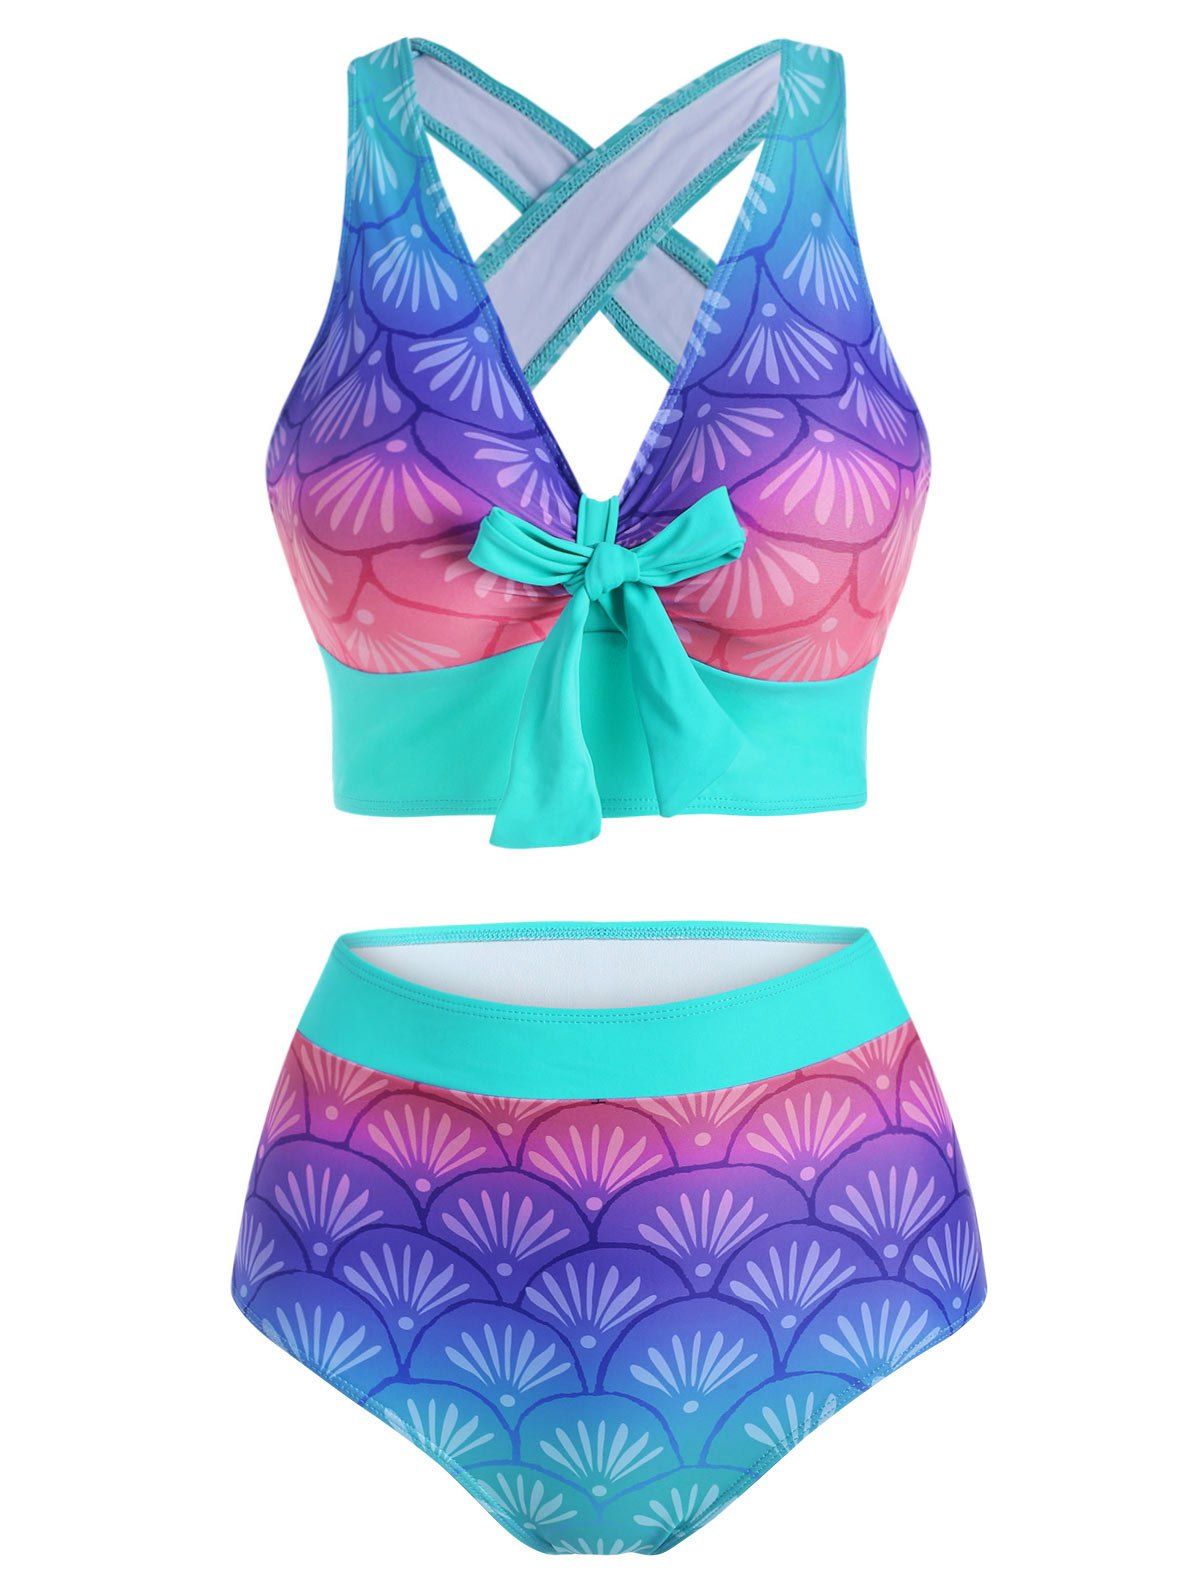 Beach Mermaid Print Swimsuit Criss Cross Bowknot Corset Tankini Swimwear - multicolor 2XL